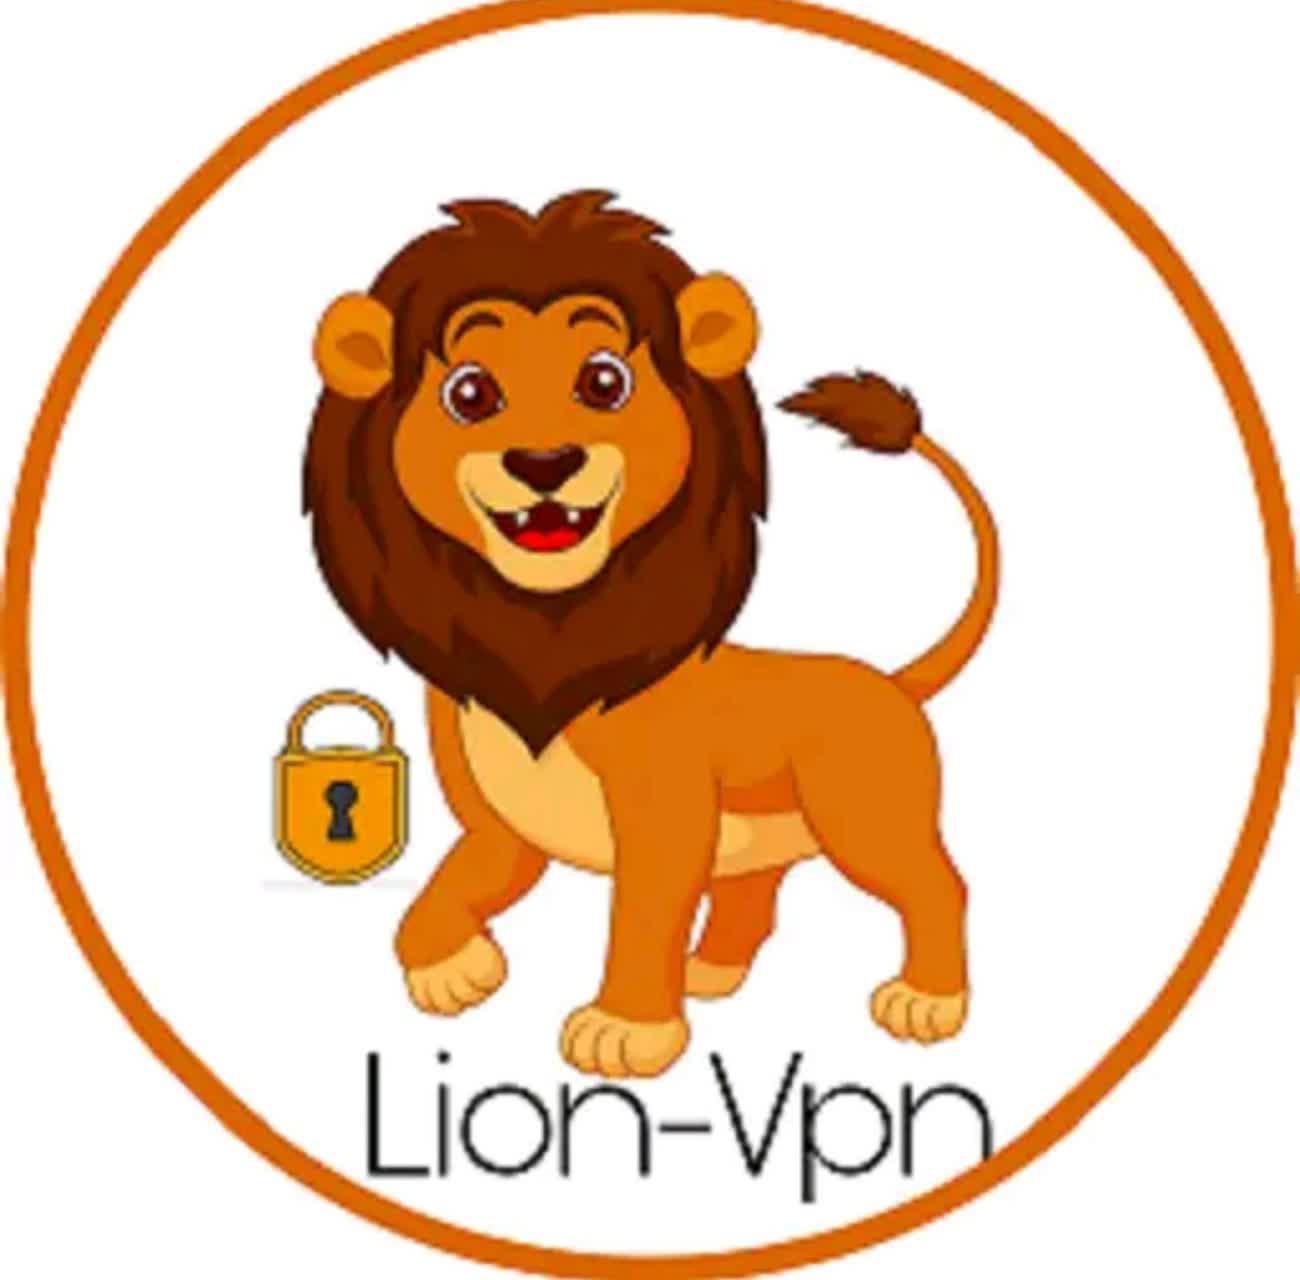 دانلود فیلتر شکن Lion Vpn 2021 با لینک مستقیم